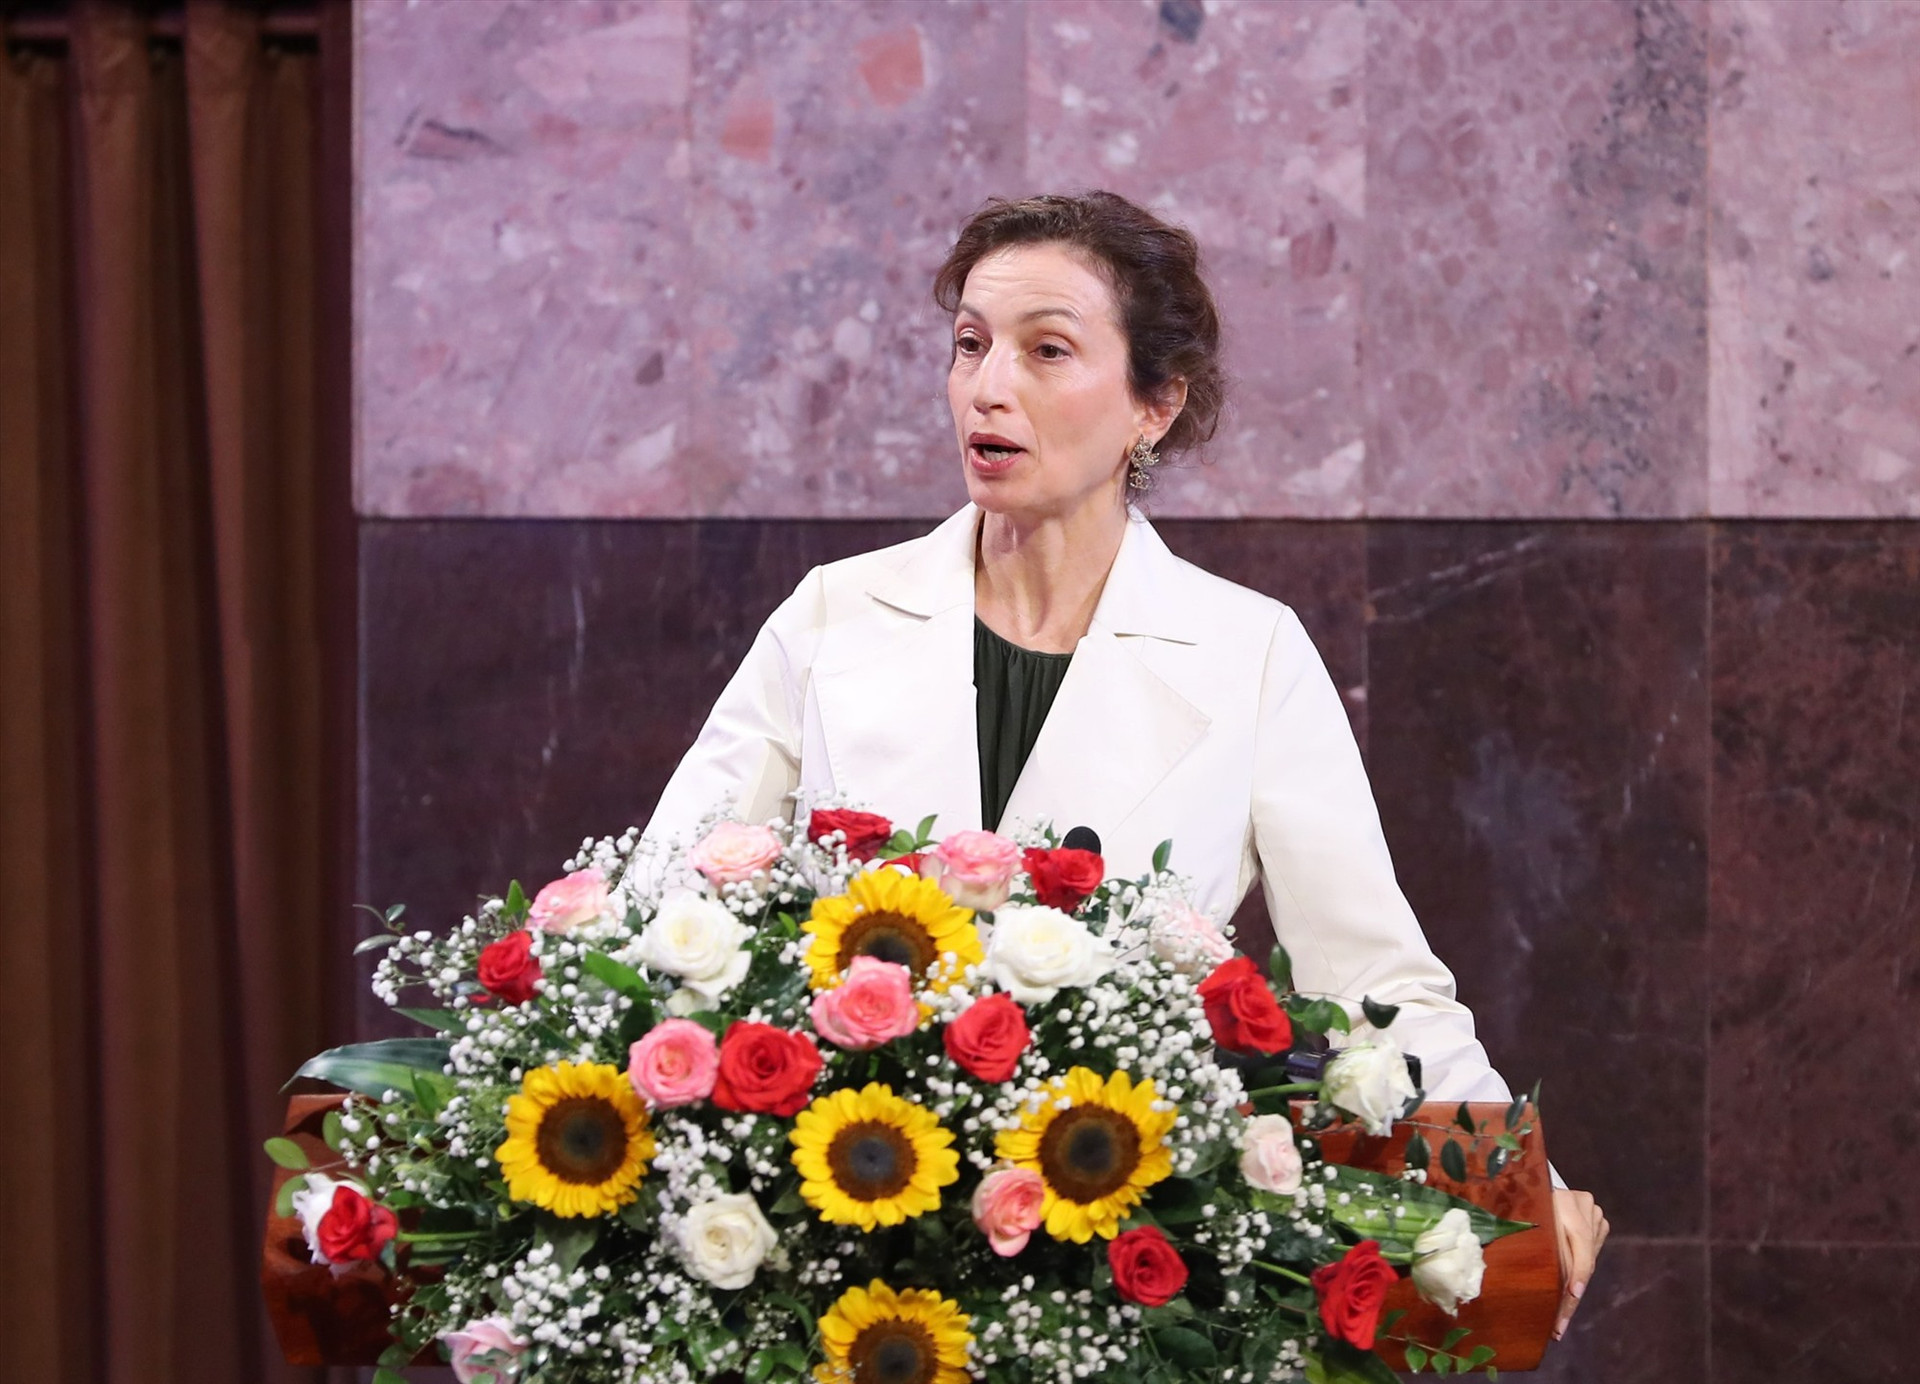 Tổng Giám đốc UNESCO Audrey Azoulay nhấn mạnh những cống hiến của Chủ tịch Hồ Chí Minh đối với dân tộc Việt Nam và nhân dân thế giới.